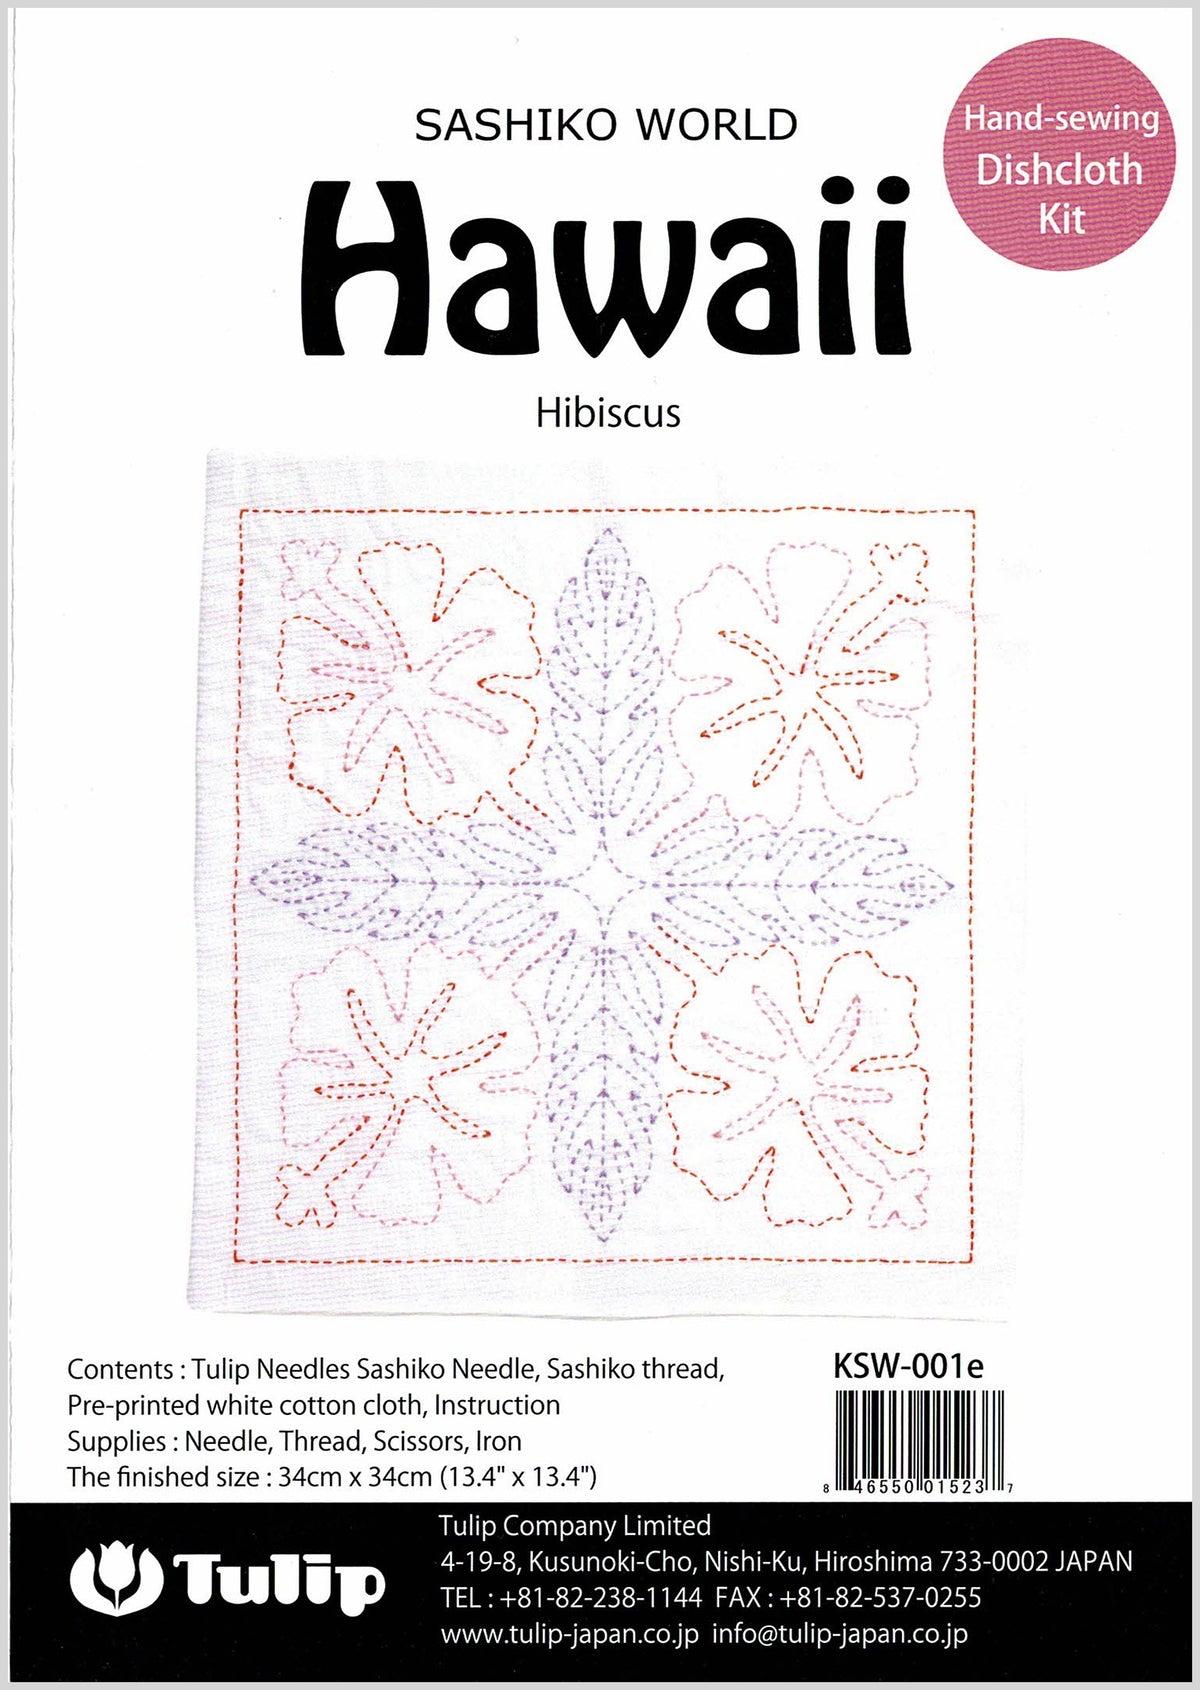 Sashiko World Embroidery Kit - Hawaii Hibiscus